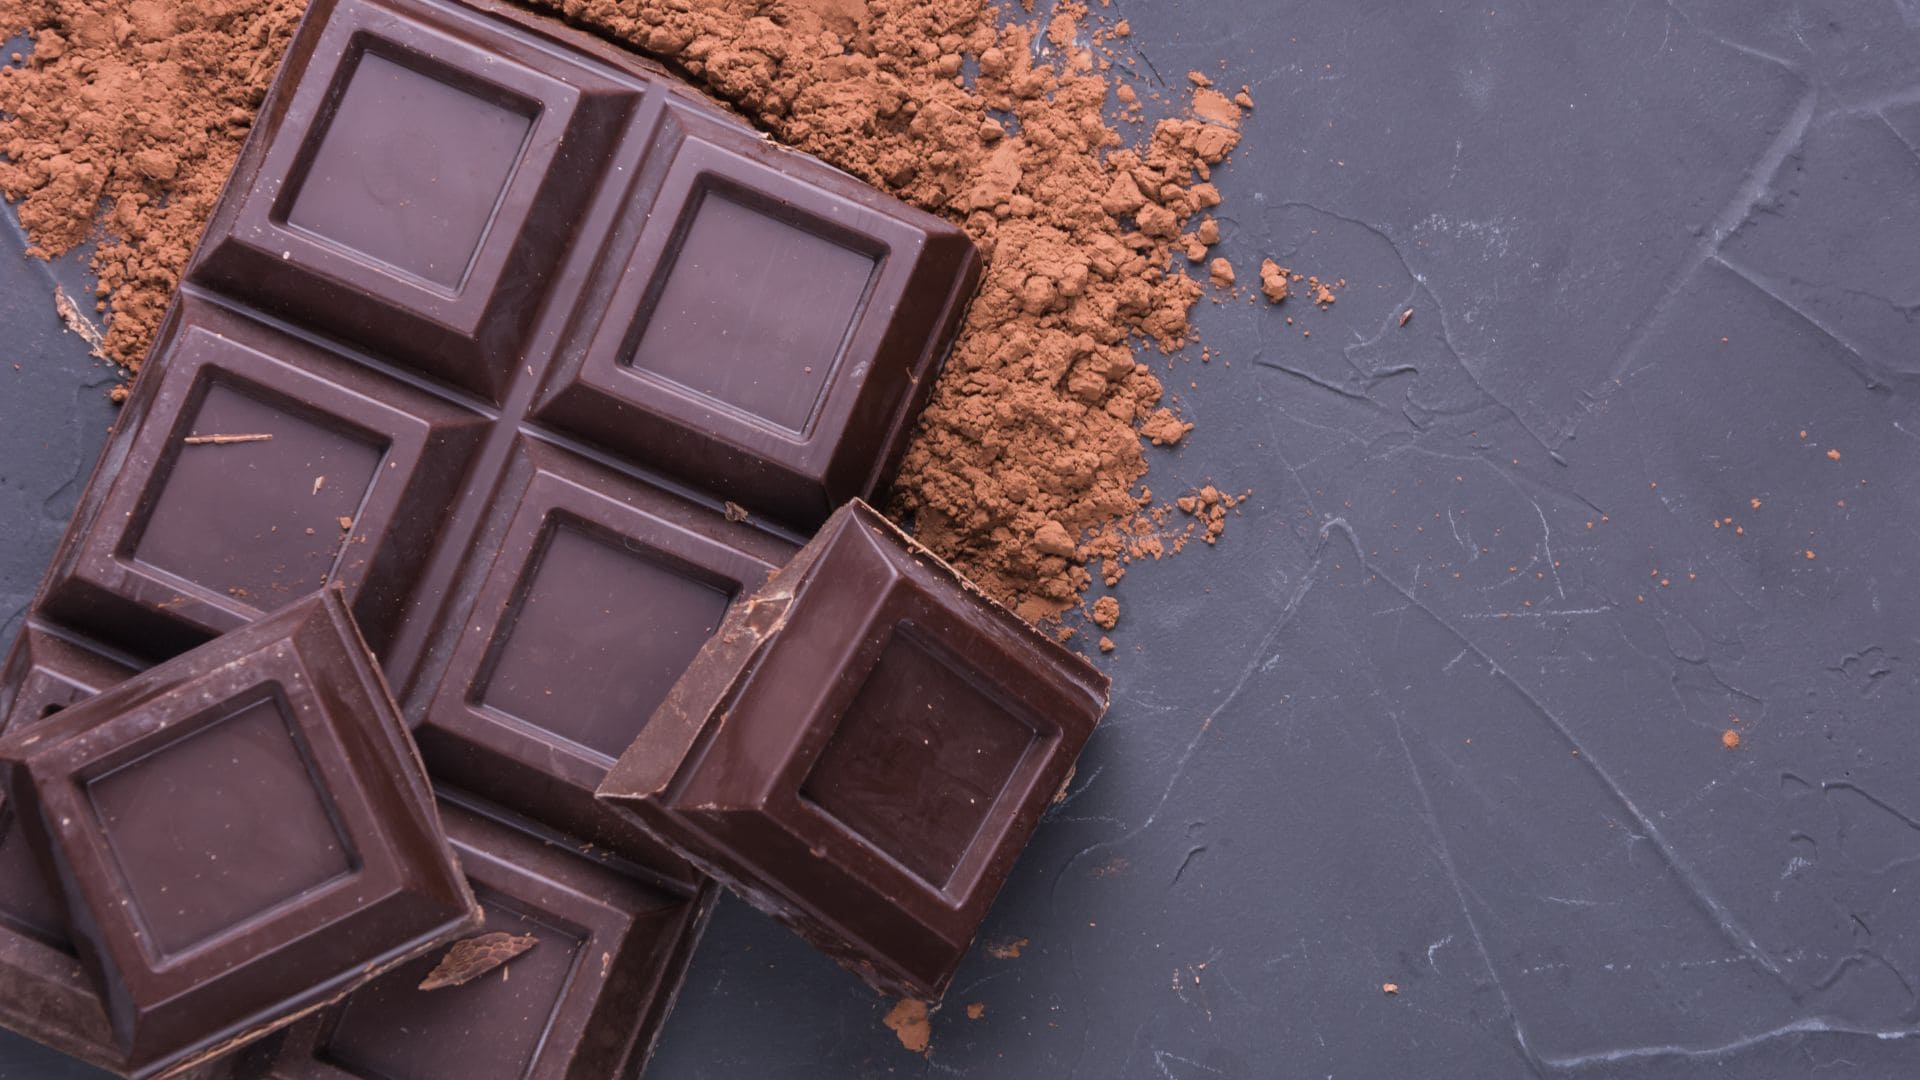 La OCU ha enfocado su estudio en los chocolates más puros